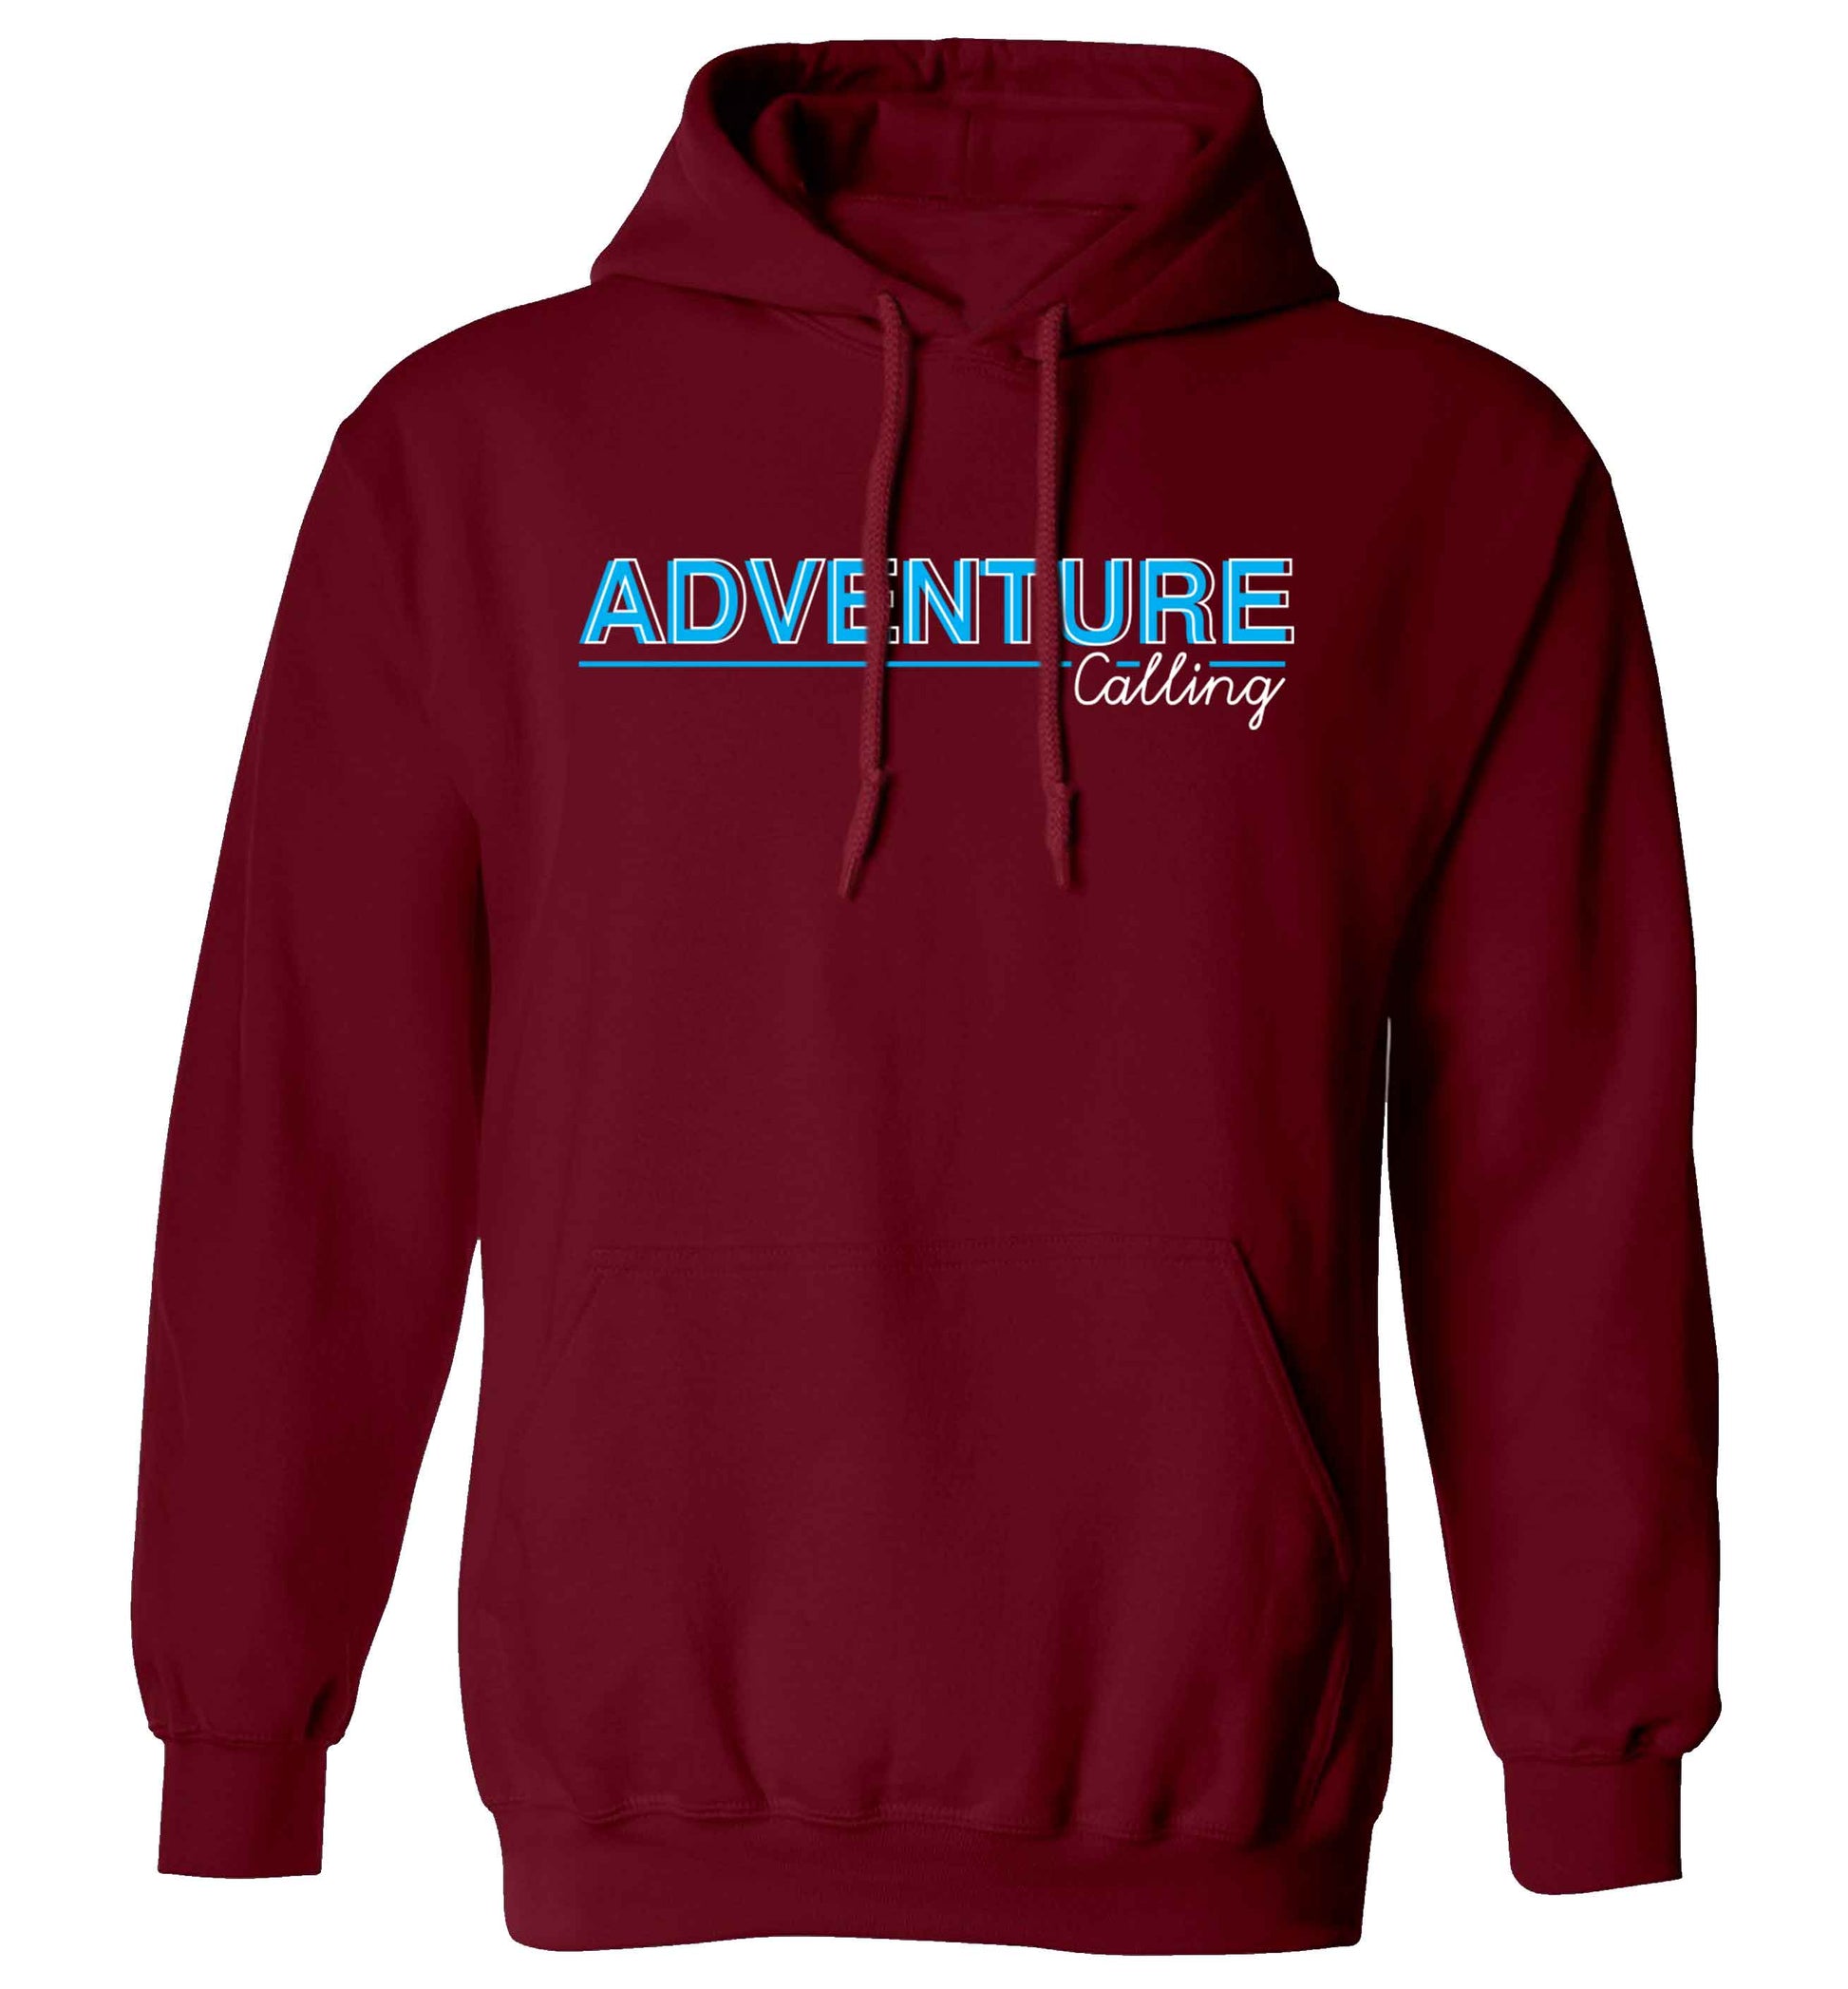 Adventure calling adults unisex maroon hoodie 2XL